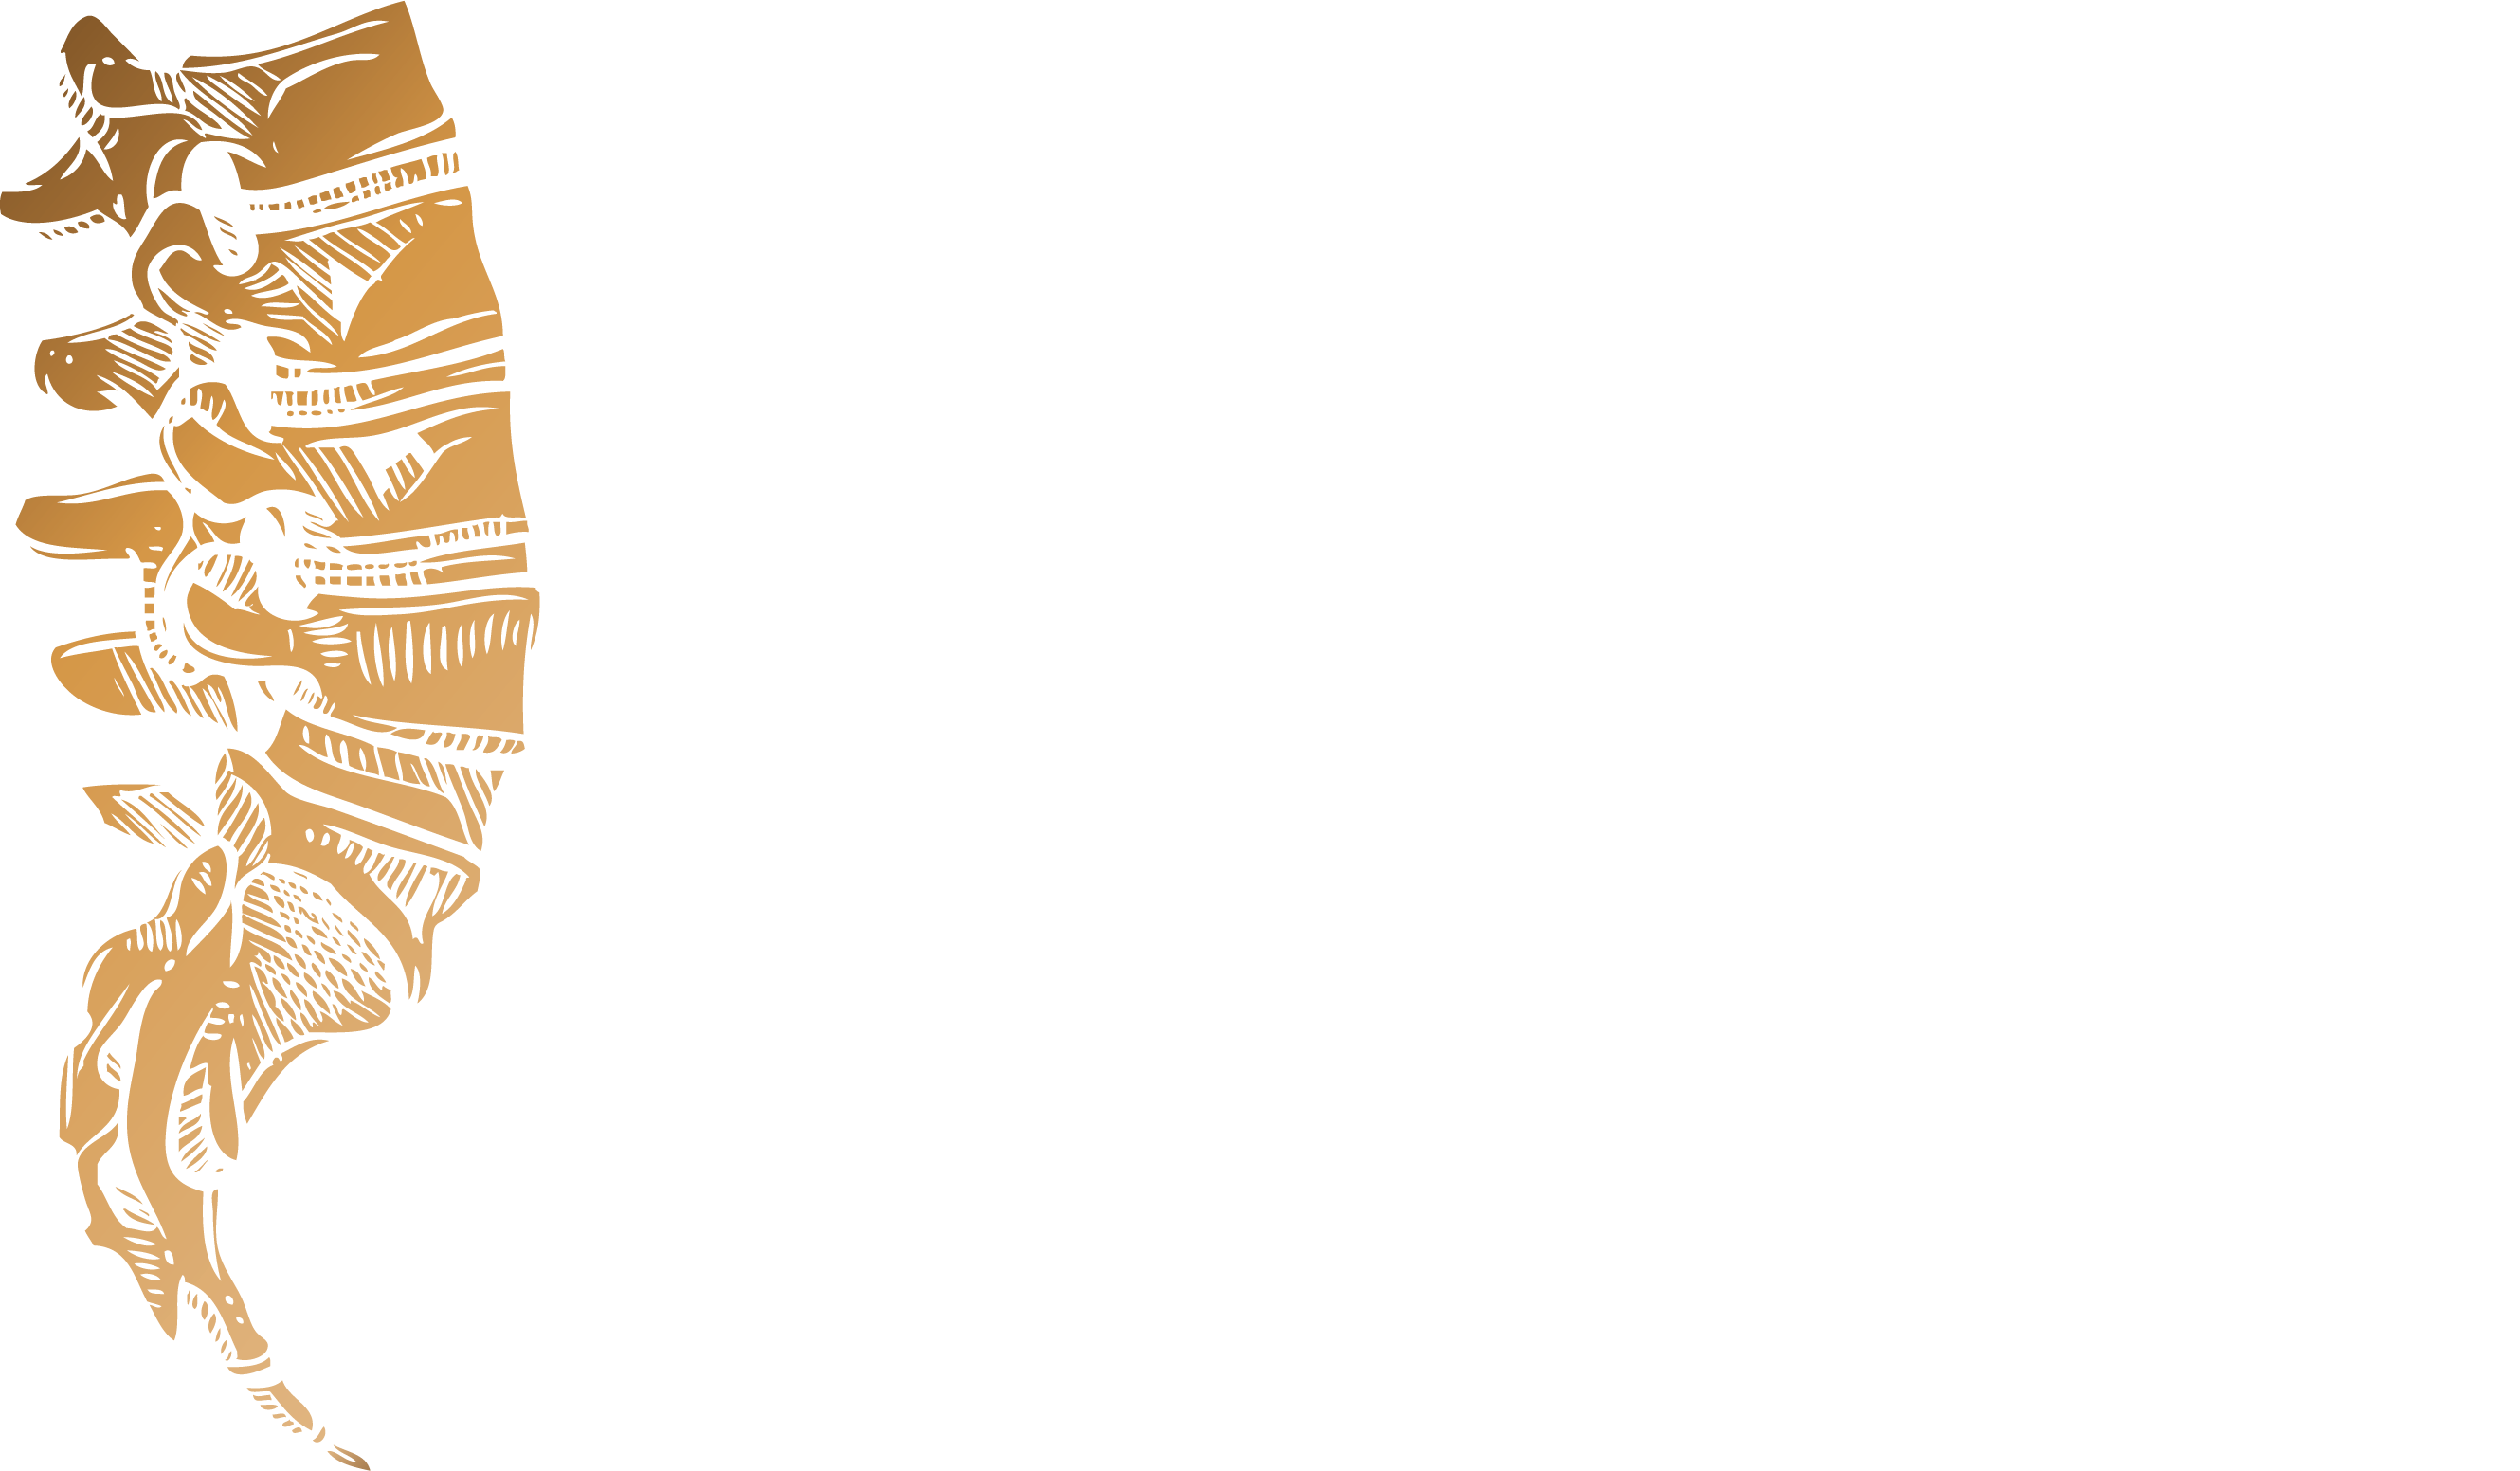 Dr-Matt-Pigden